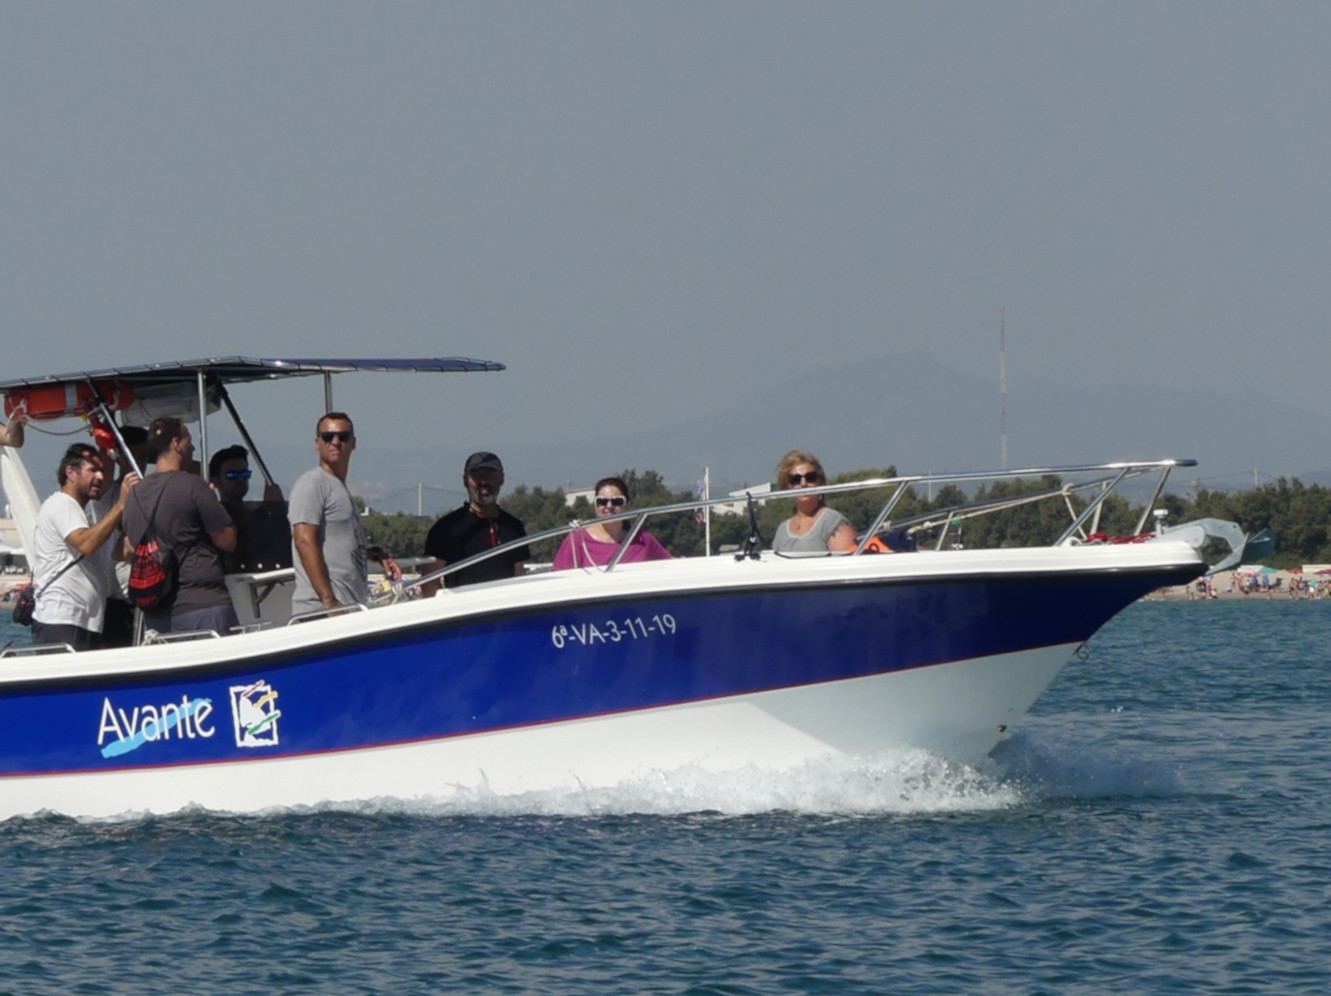 El Avante Terceiro navega frente a la playa de Pinedo, muy cerca de la Marina Valencia Mar. Prácticas PER motor